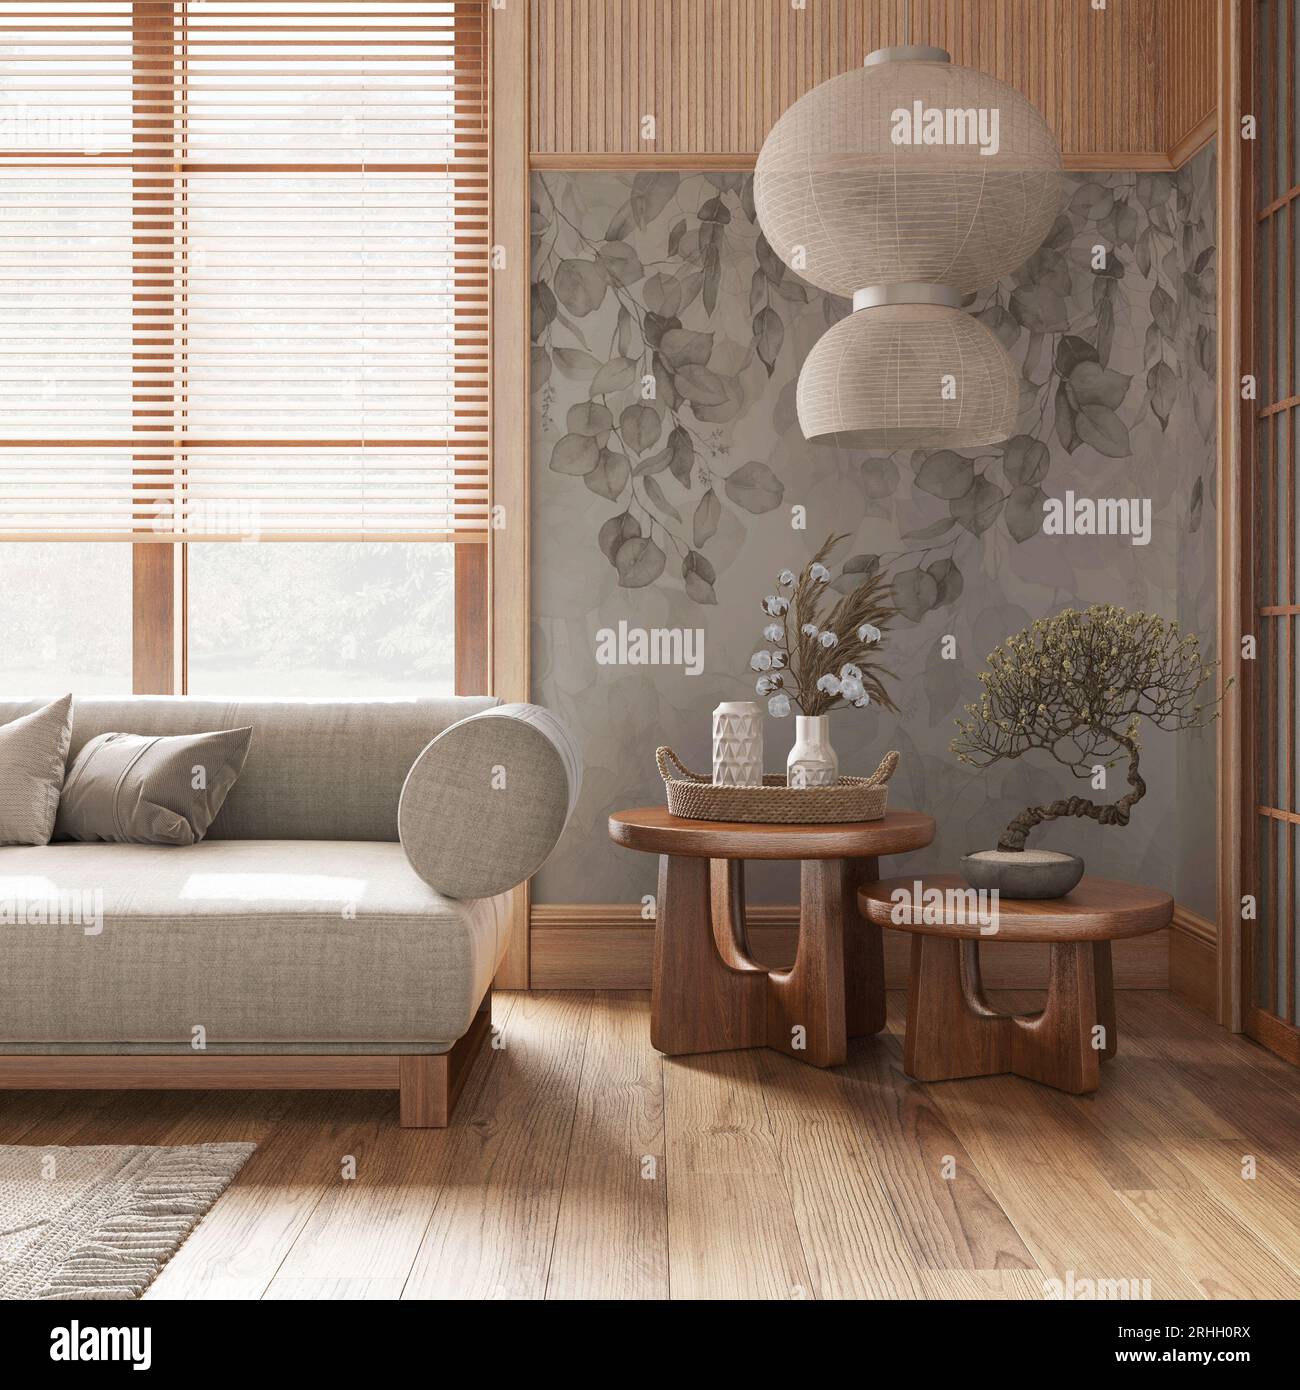 Salon japonais avec papier peint et murs en bois dans des tons blancs et  beiges. Parquet, canapé en tissu, tapis et décors. Japandi interio minimal  Photo Stock - Alamy